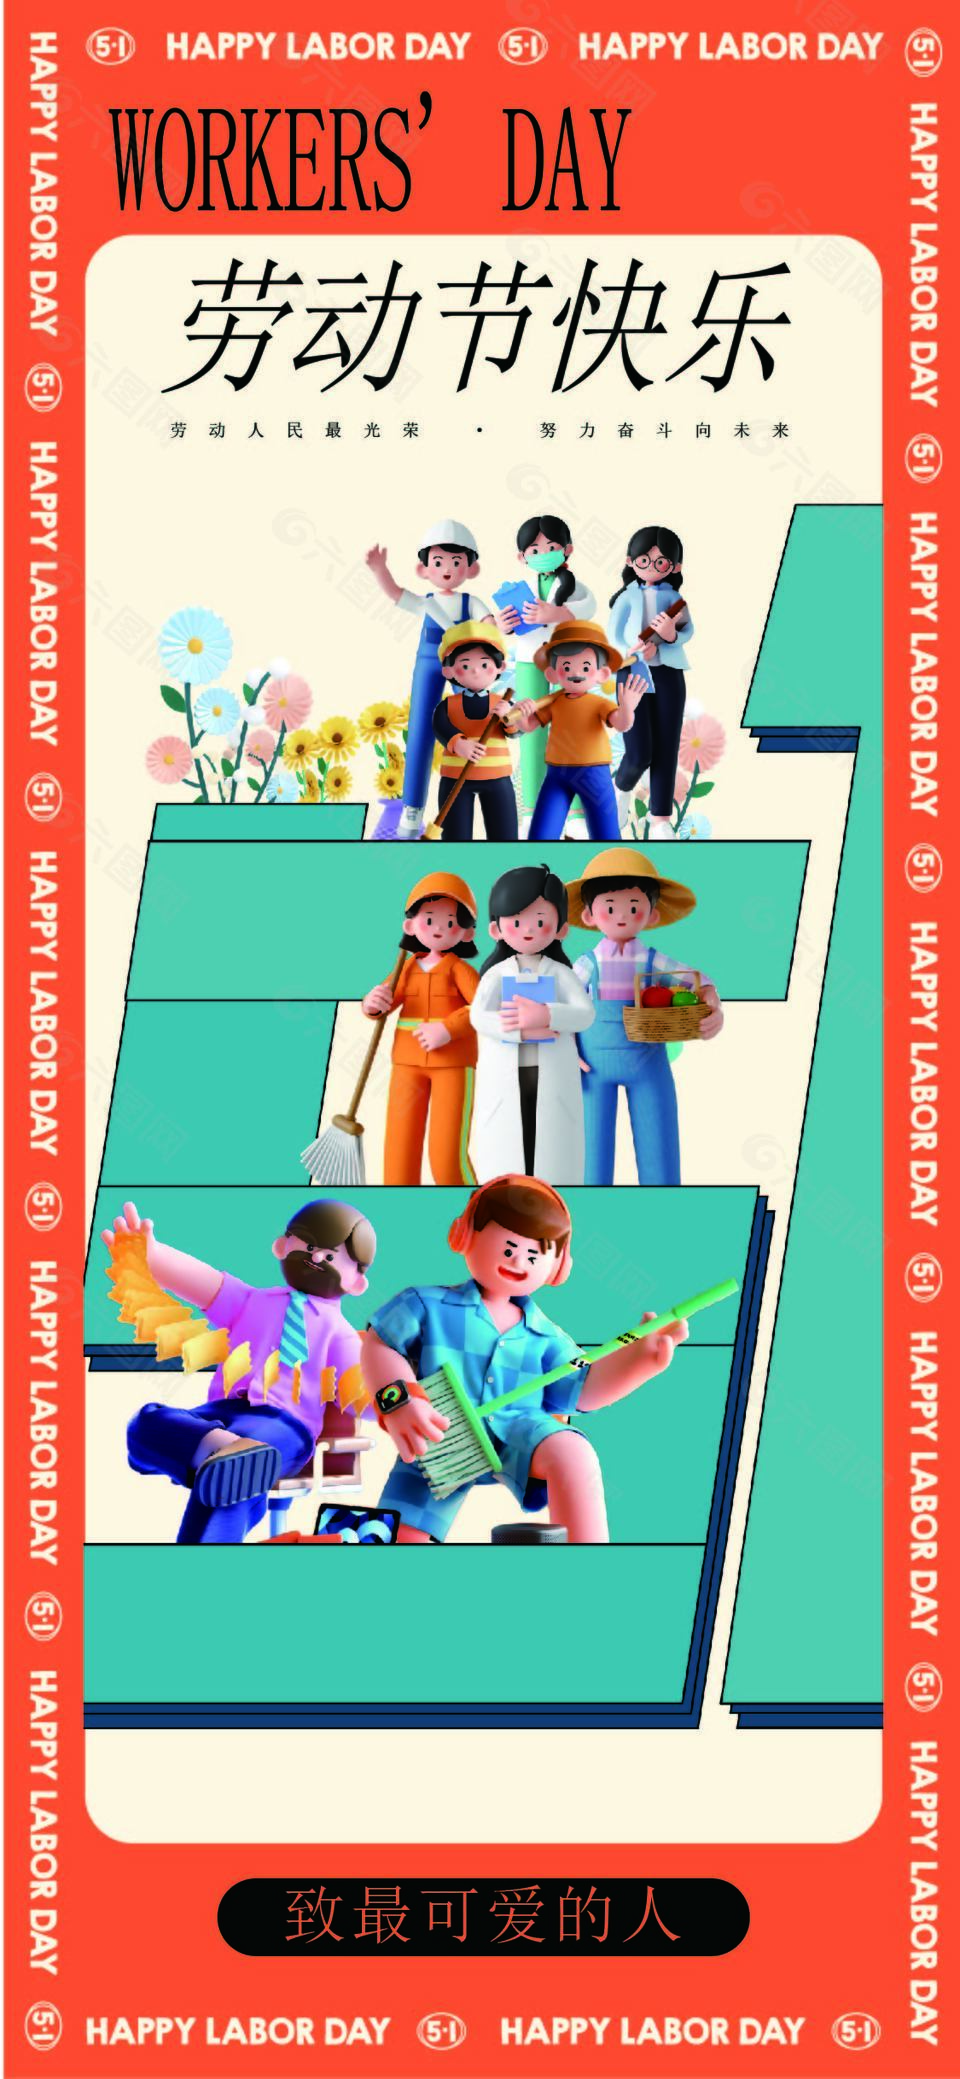 劳动节快乐3d立体小人创意海报设计